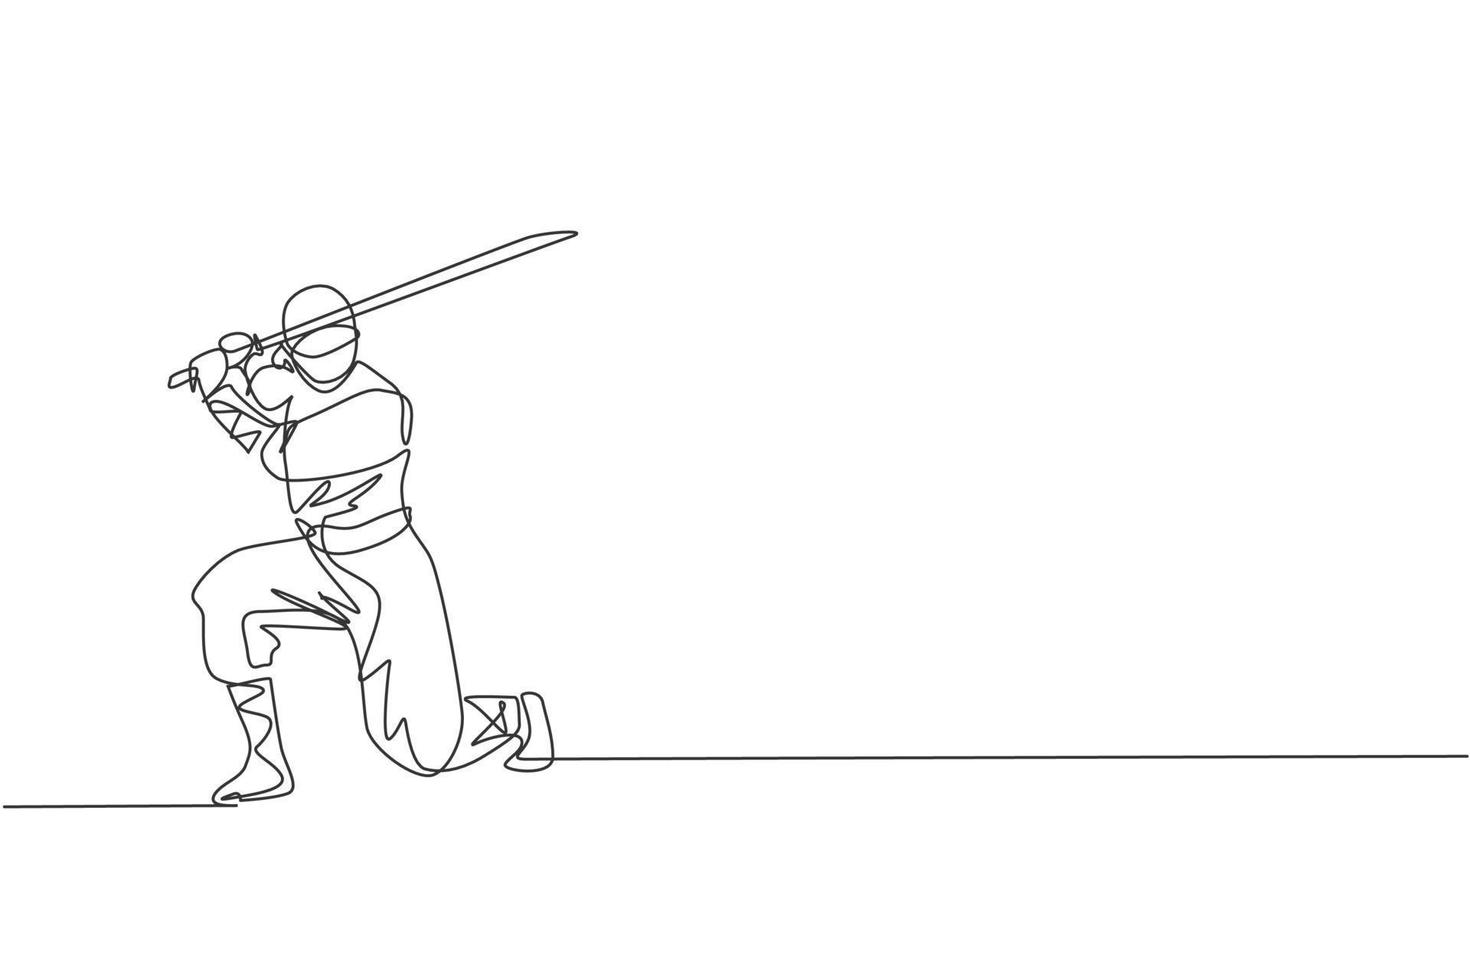 un disegno a linea continua di un giovane ninja coraggioso giapponese su costume nero con posizione di attacco. concetto di combattimento di arte marziale. illustrazione grafica vettoriale di disegno dinamico a linea singola